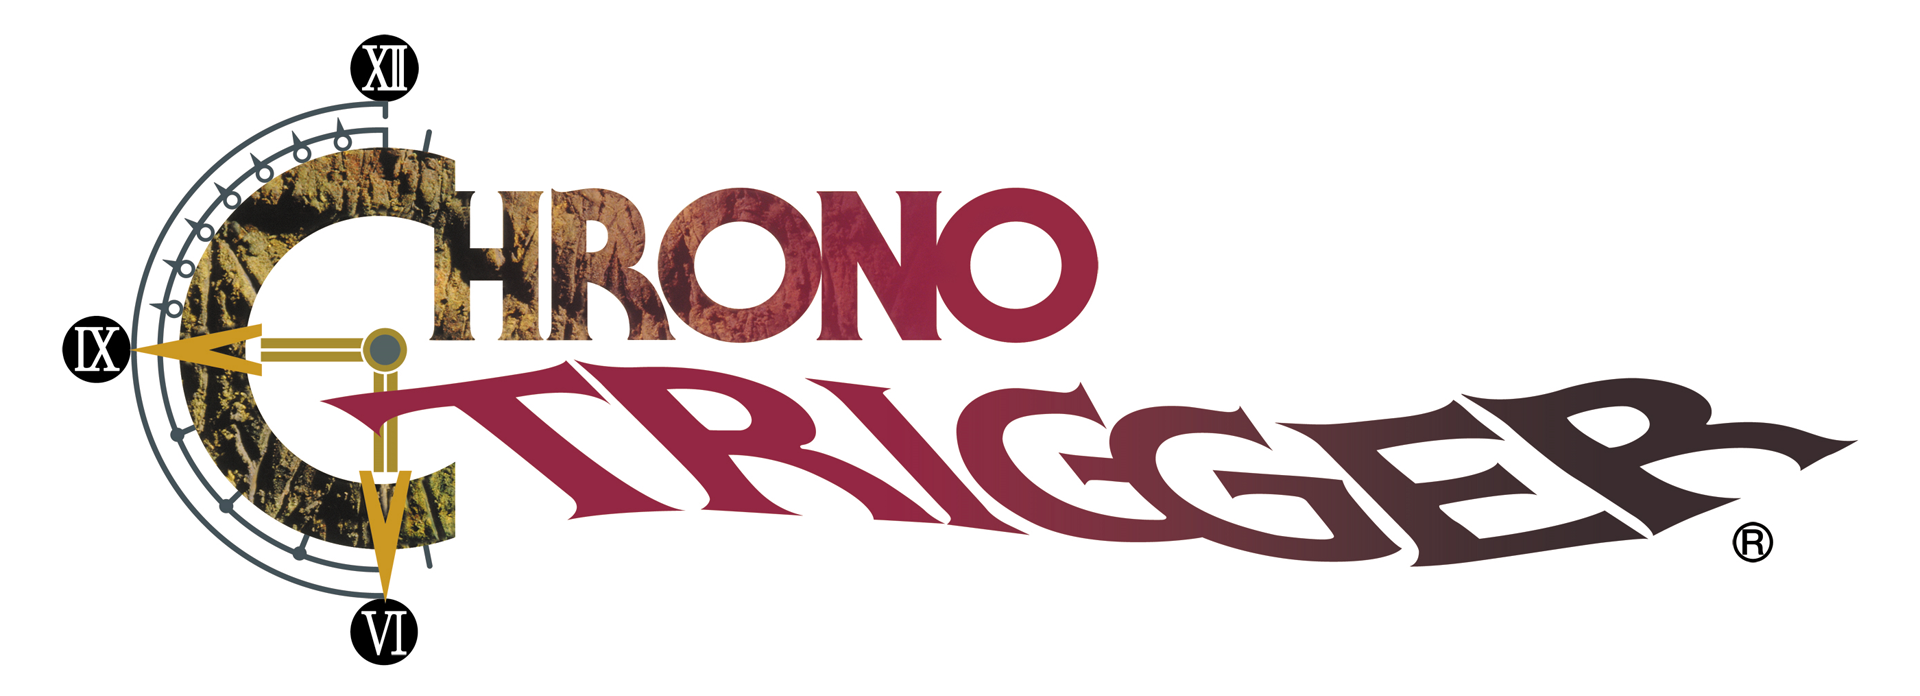 Chrono Trigger Tourney Logo